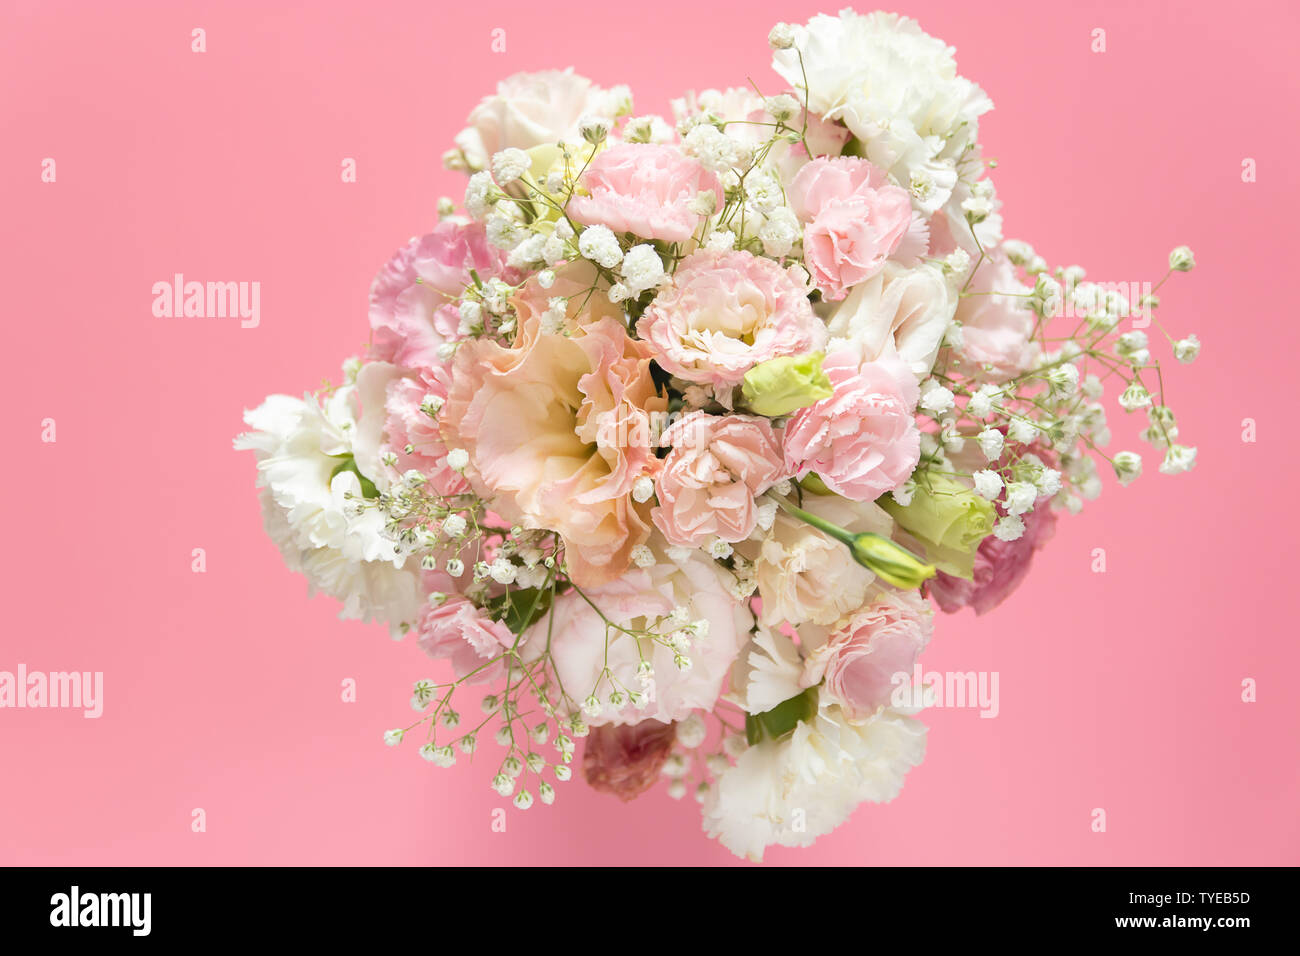 Vista superior del bonito y romántico ramo de flores frescas sobre fondo de color rosa con espacio de copia Foto de stock